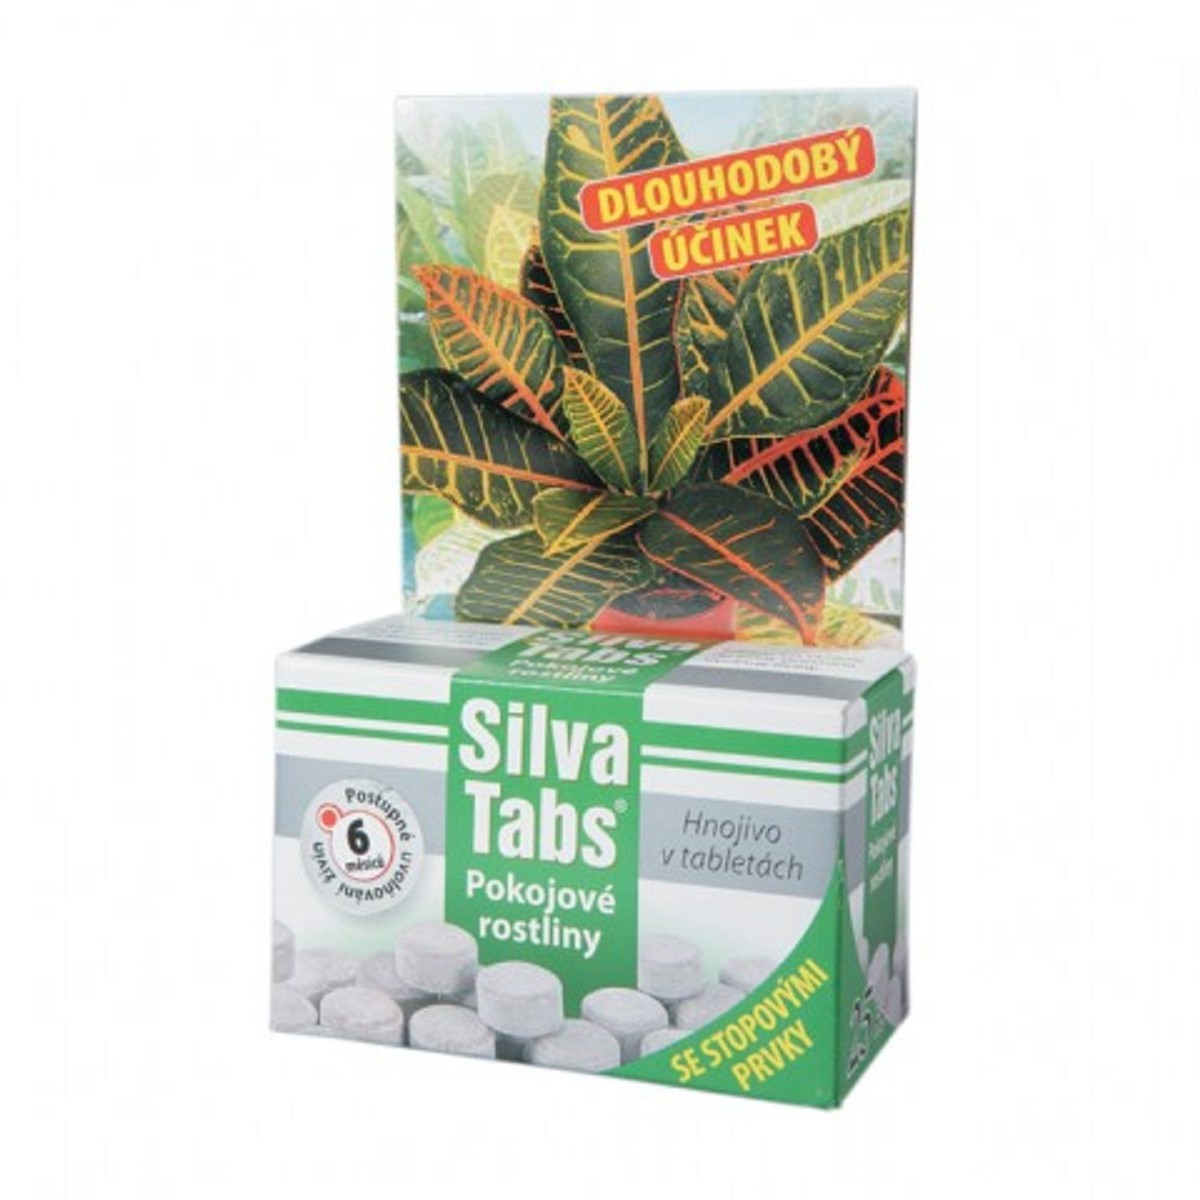 Silva tabs pro pokojové rostliny - 250 g